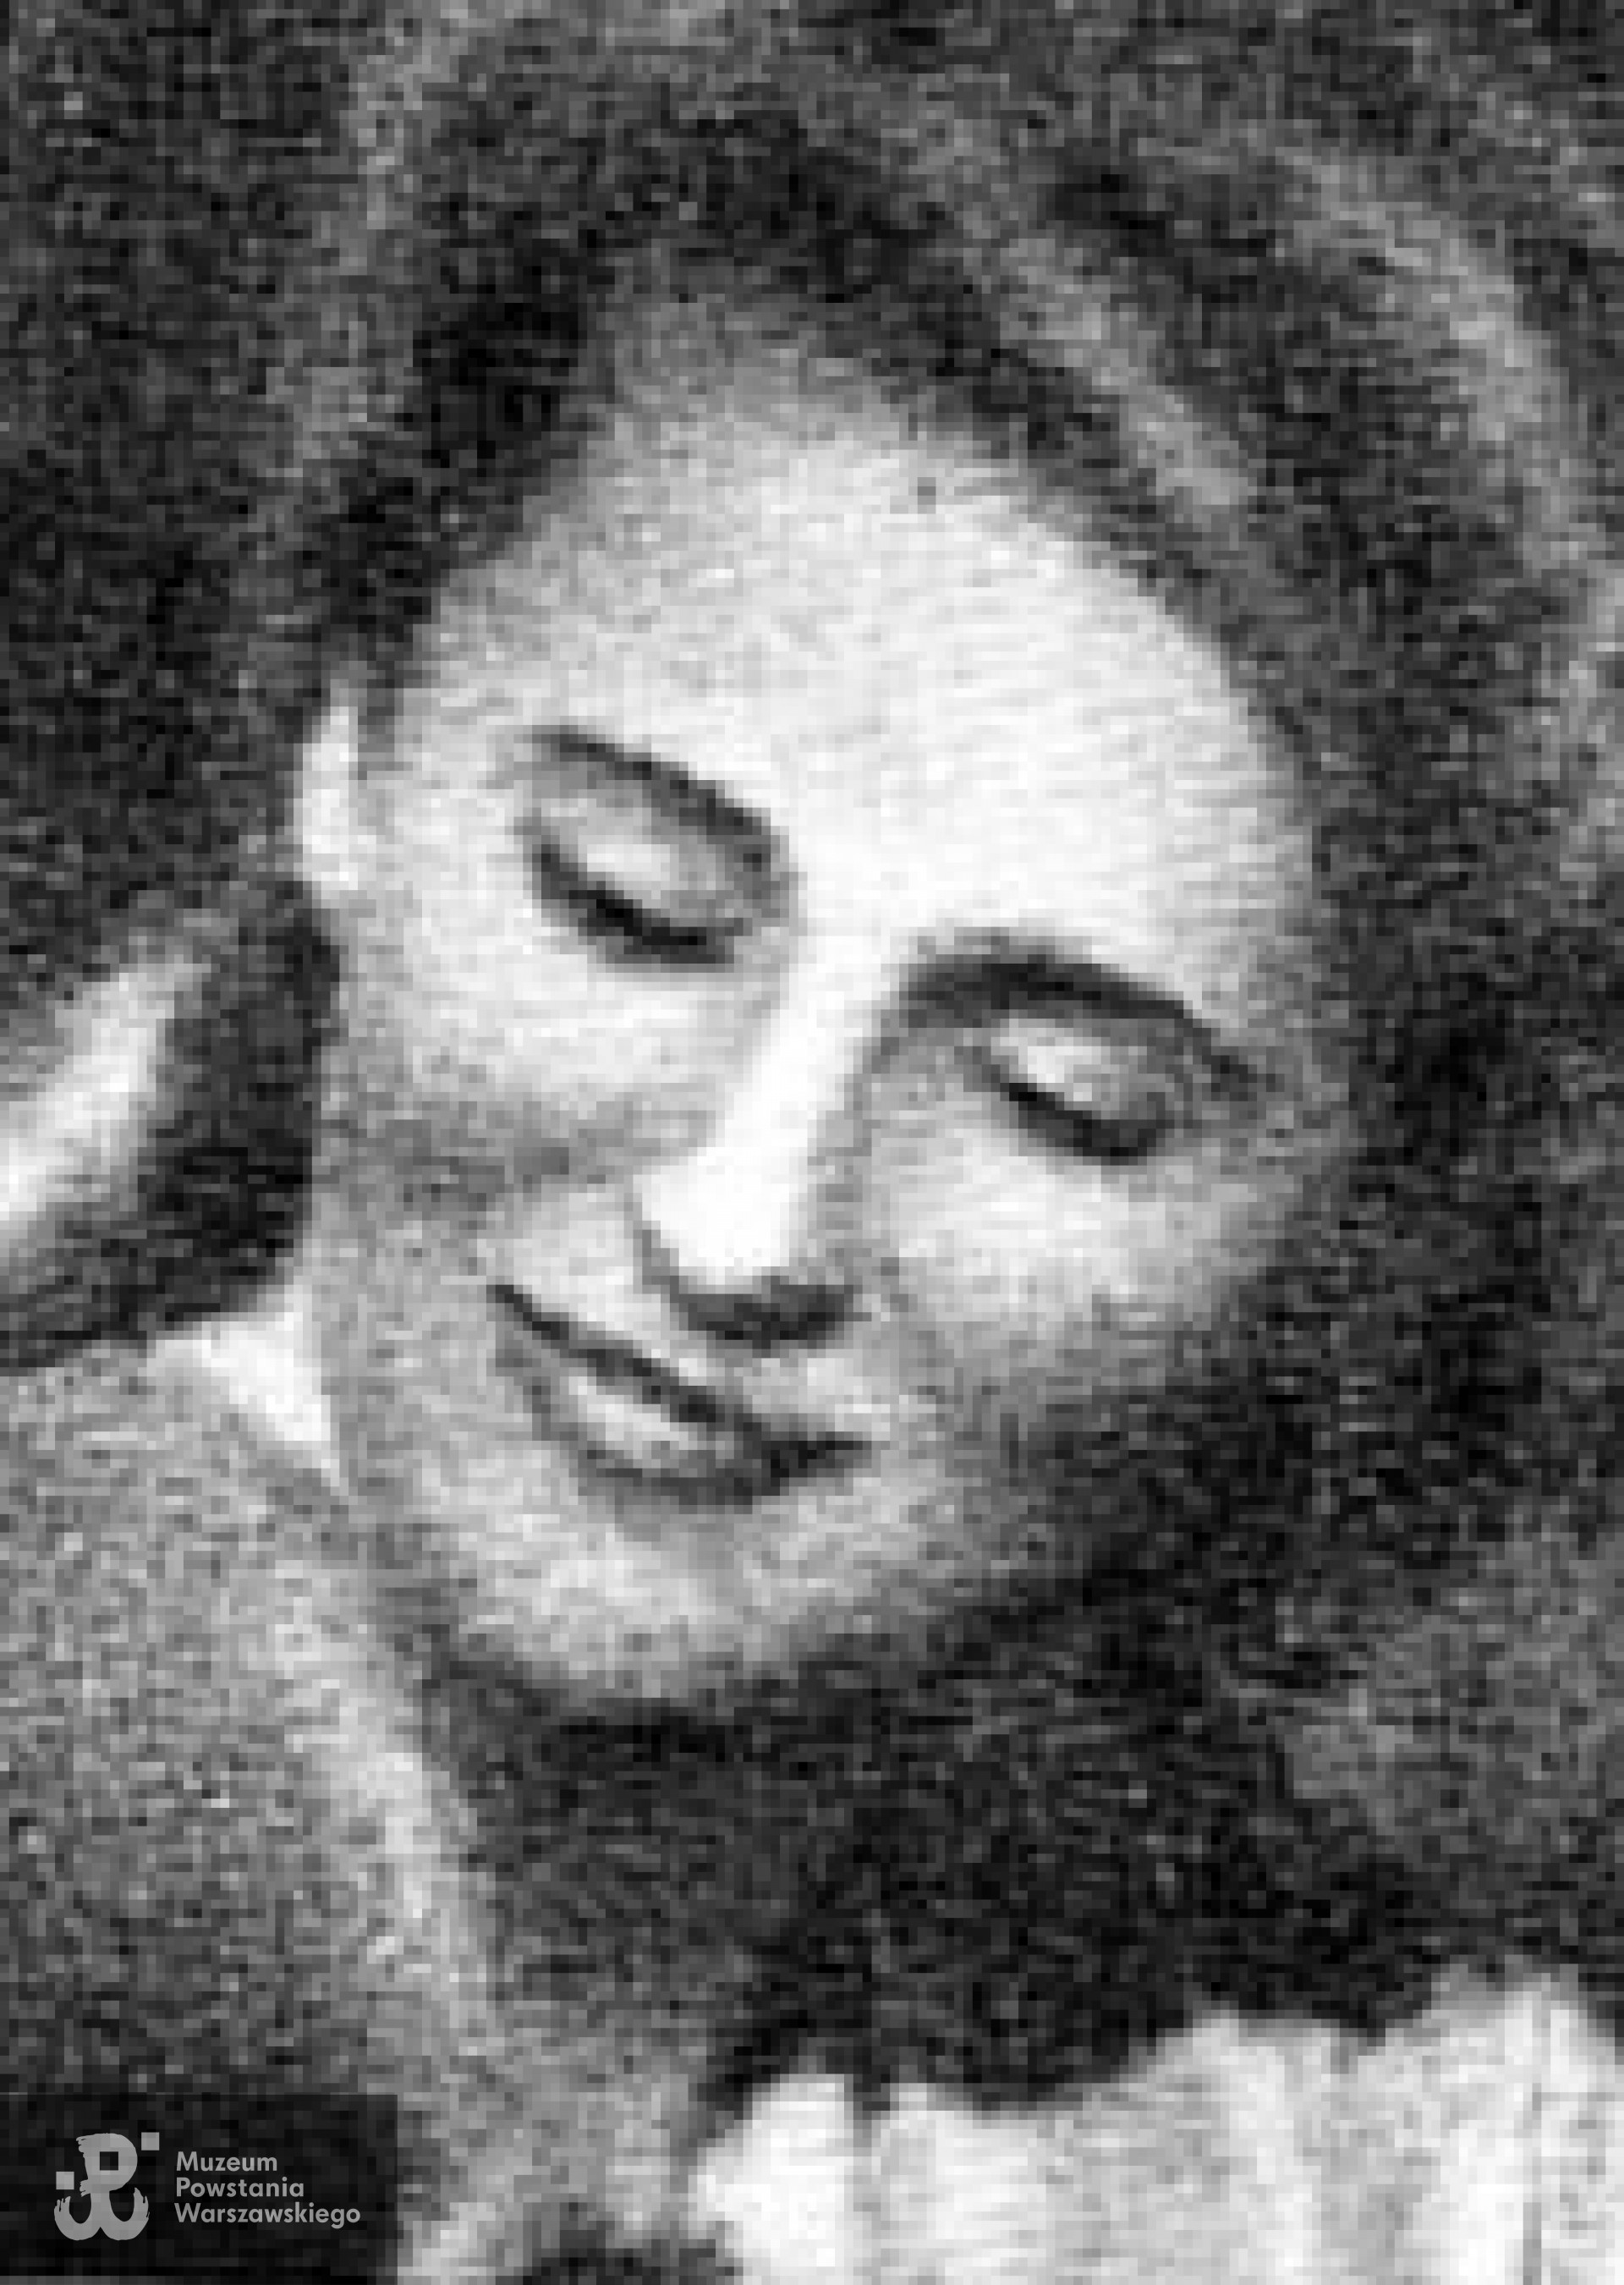 Zofia Hörlówna (1924-1944)